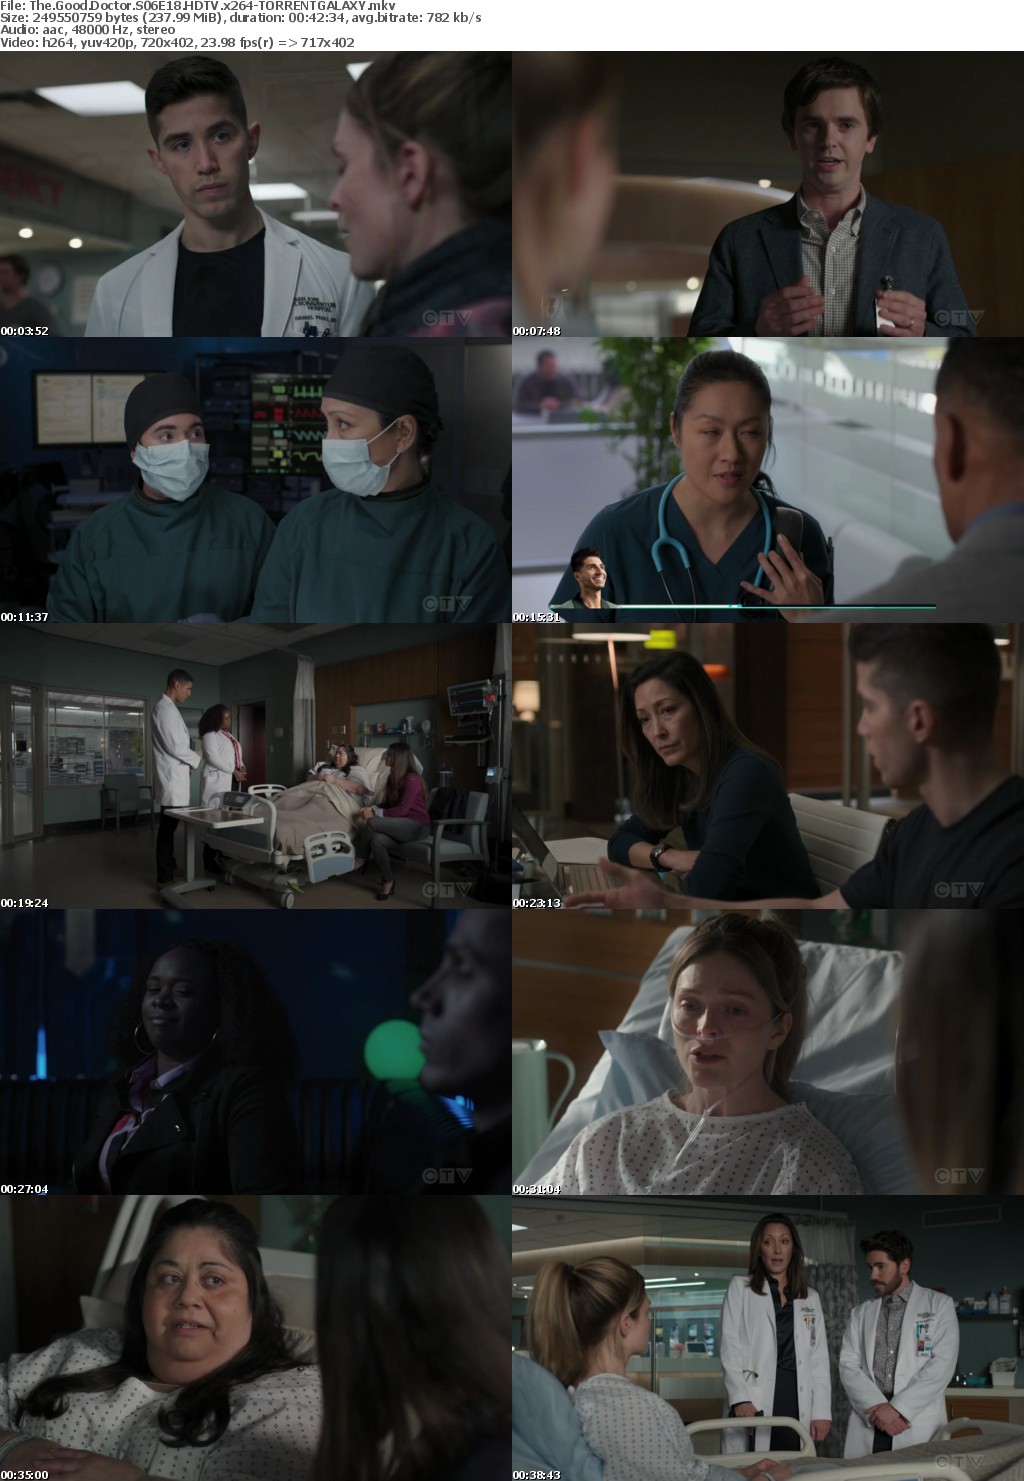 The Good Doctor S06E18 HDTV x264-GALAXY